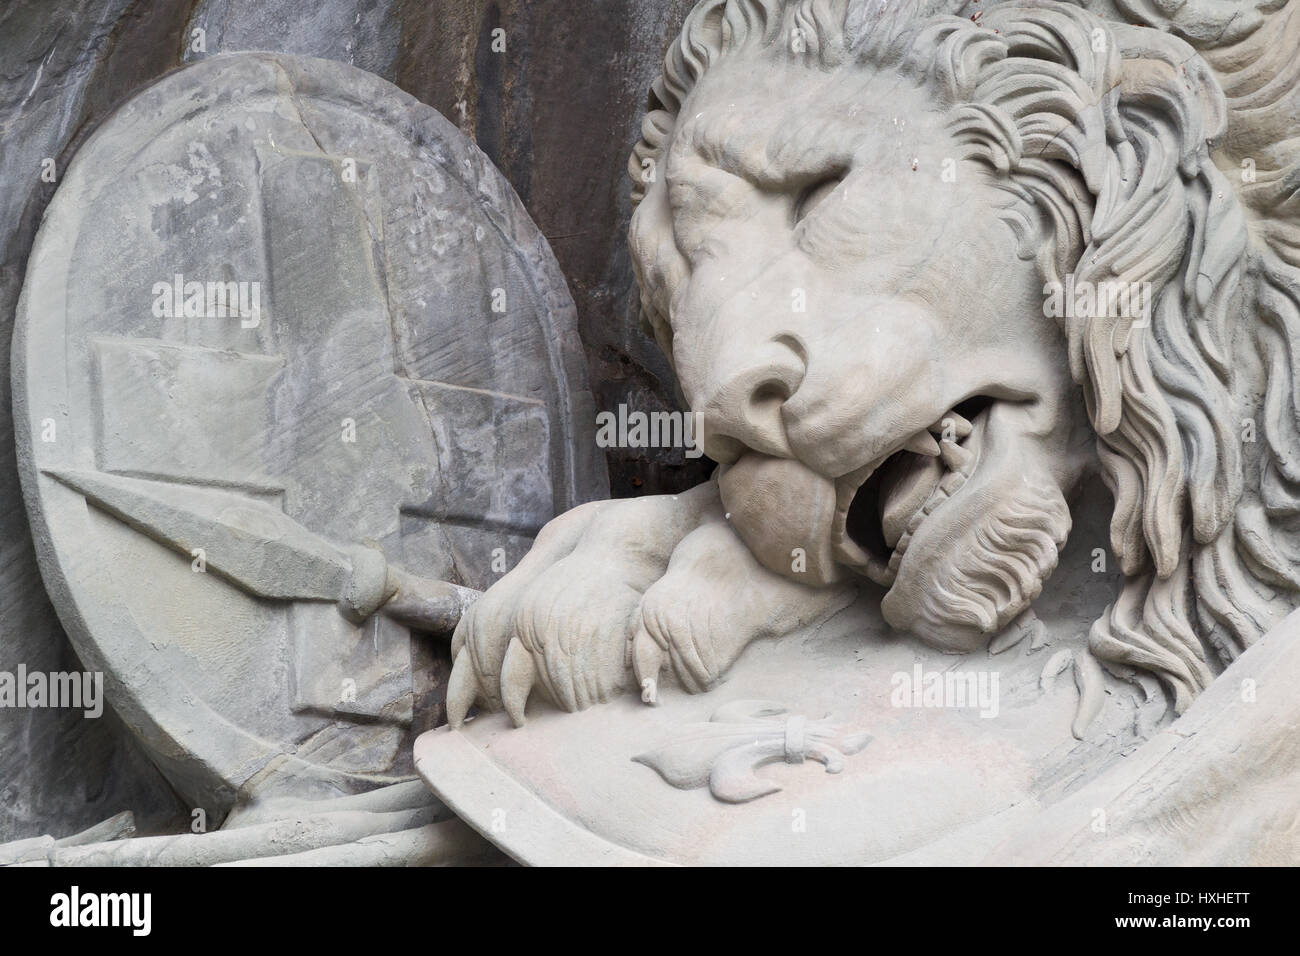 Löwendenkmal : 'le plus triste et émouvant morceau de pierre dans le monde" (Mark Twain) - close-up Banque D'Images